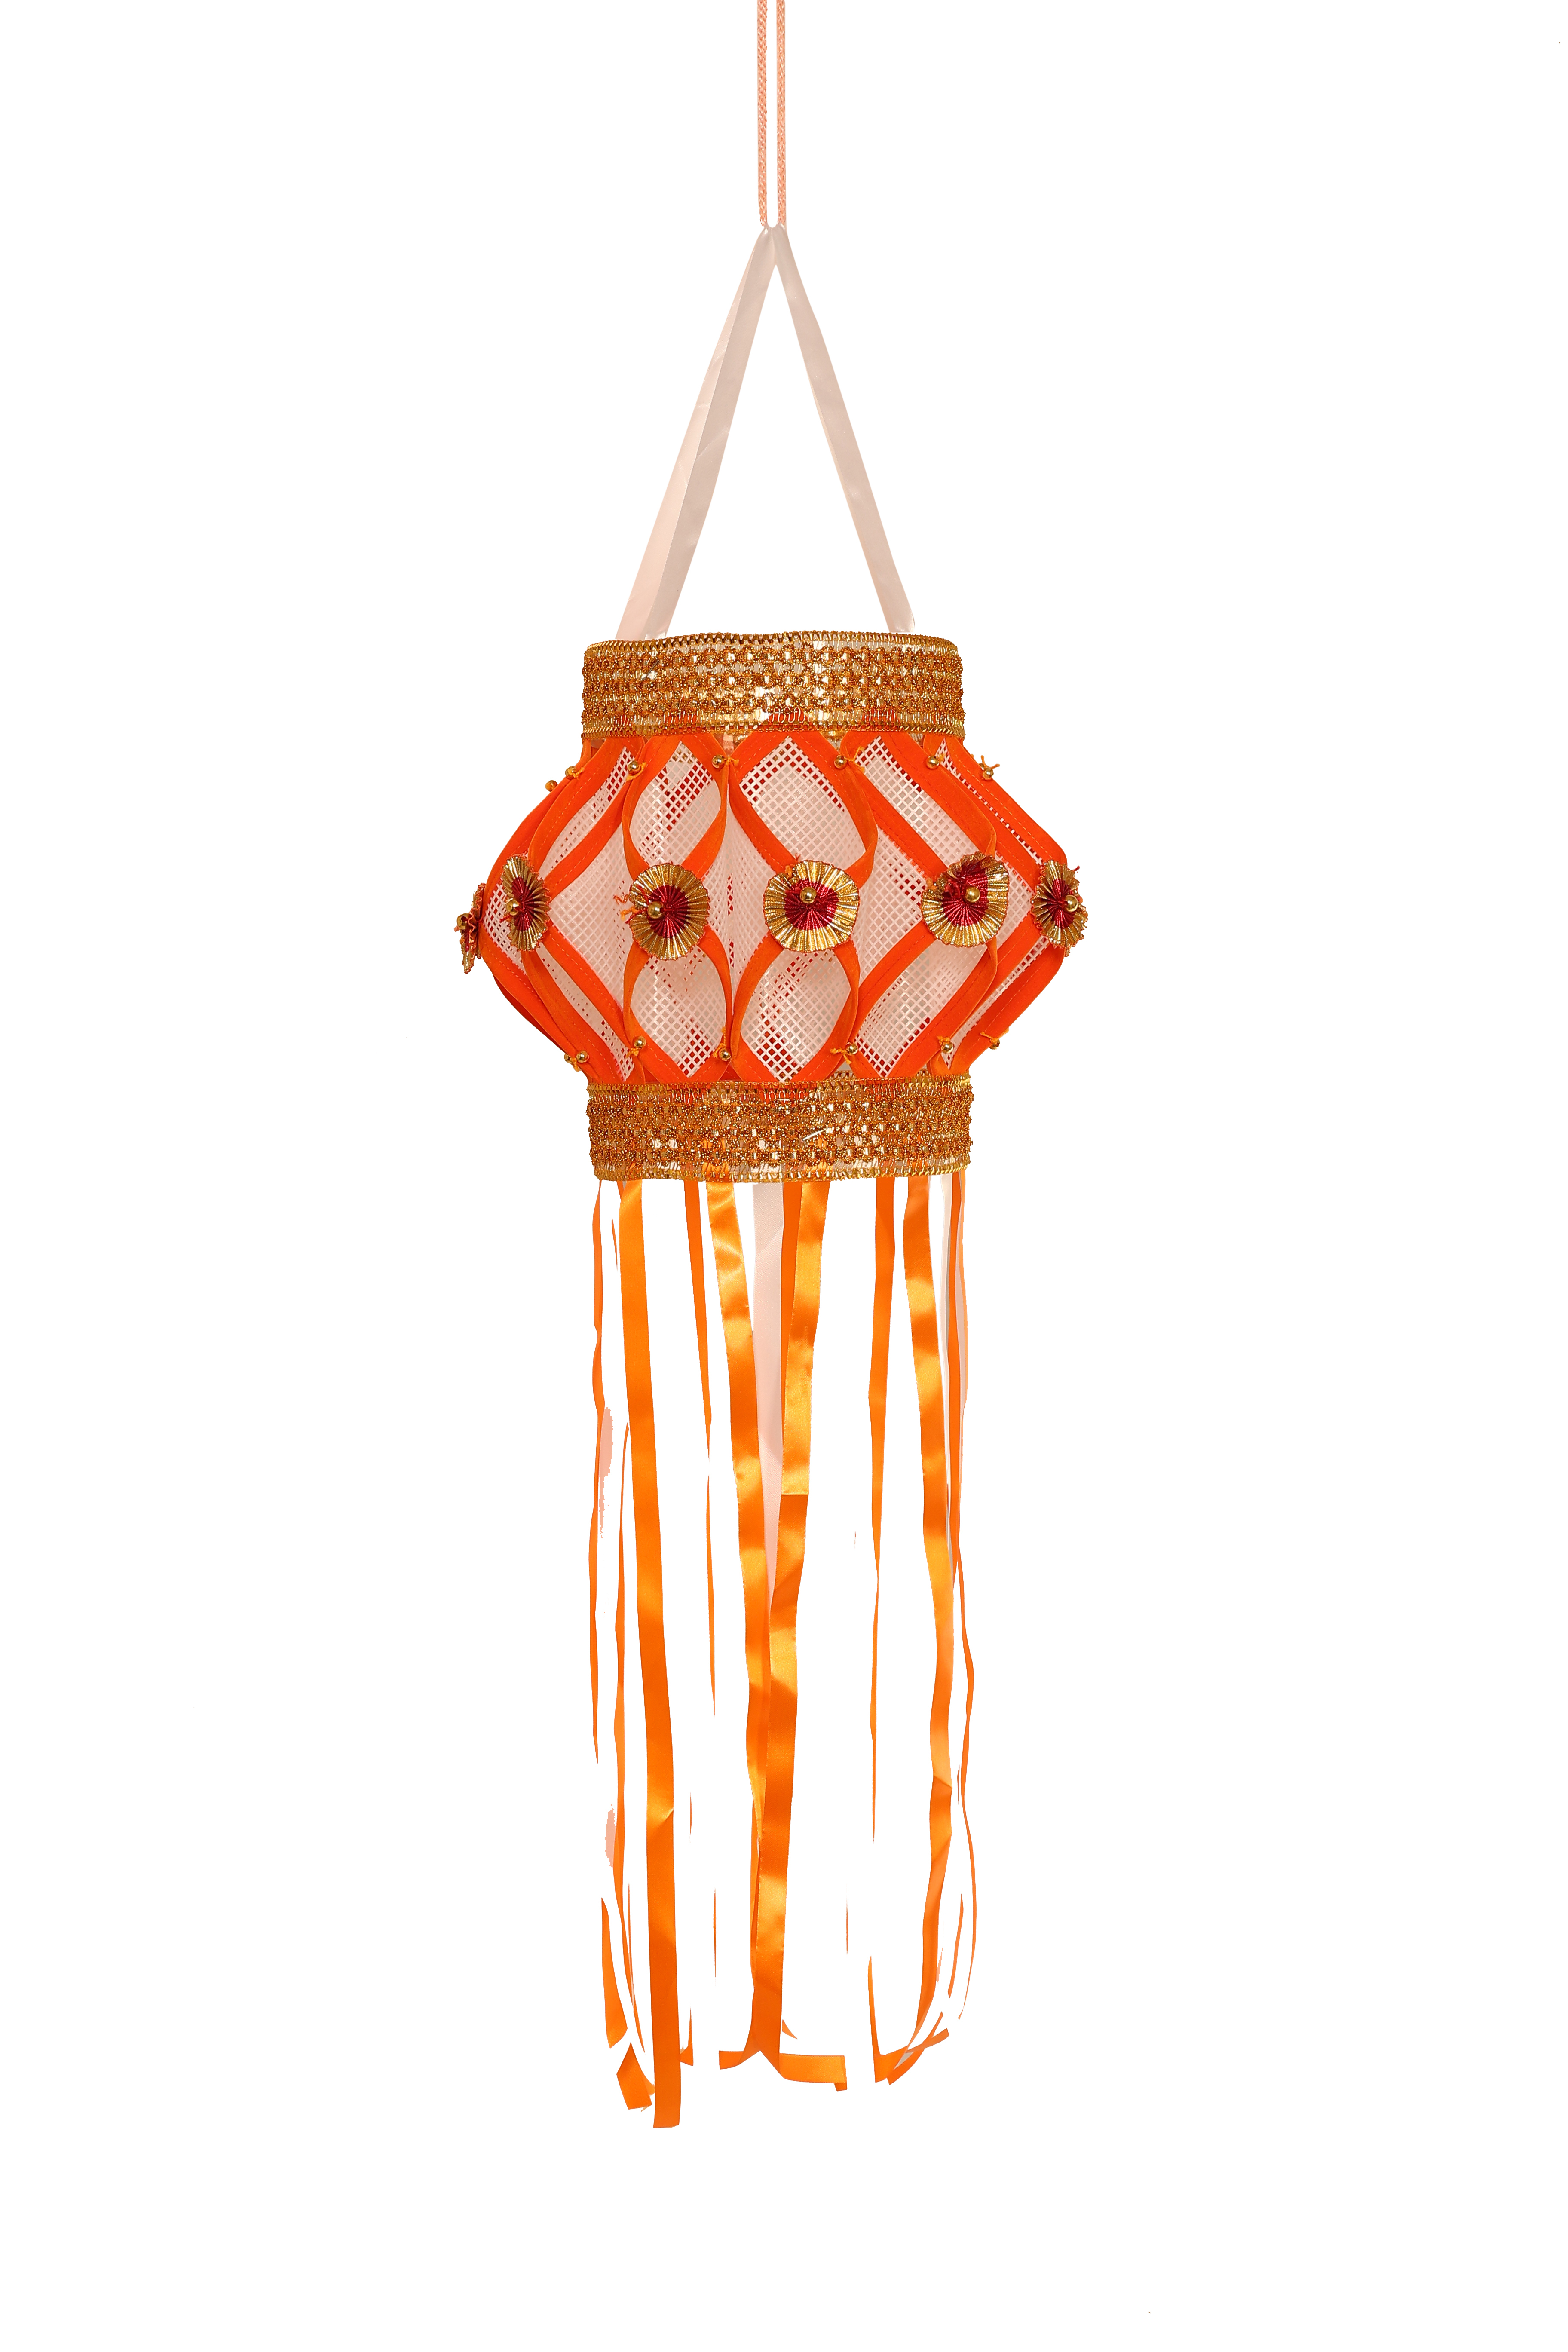 Orange Lantern Kandil for diwali